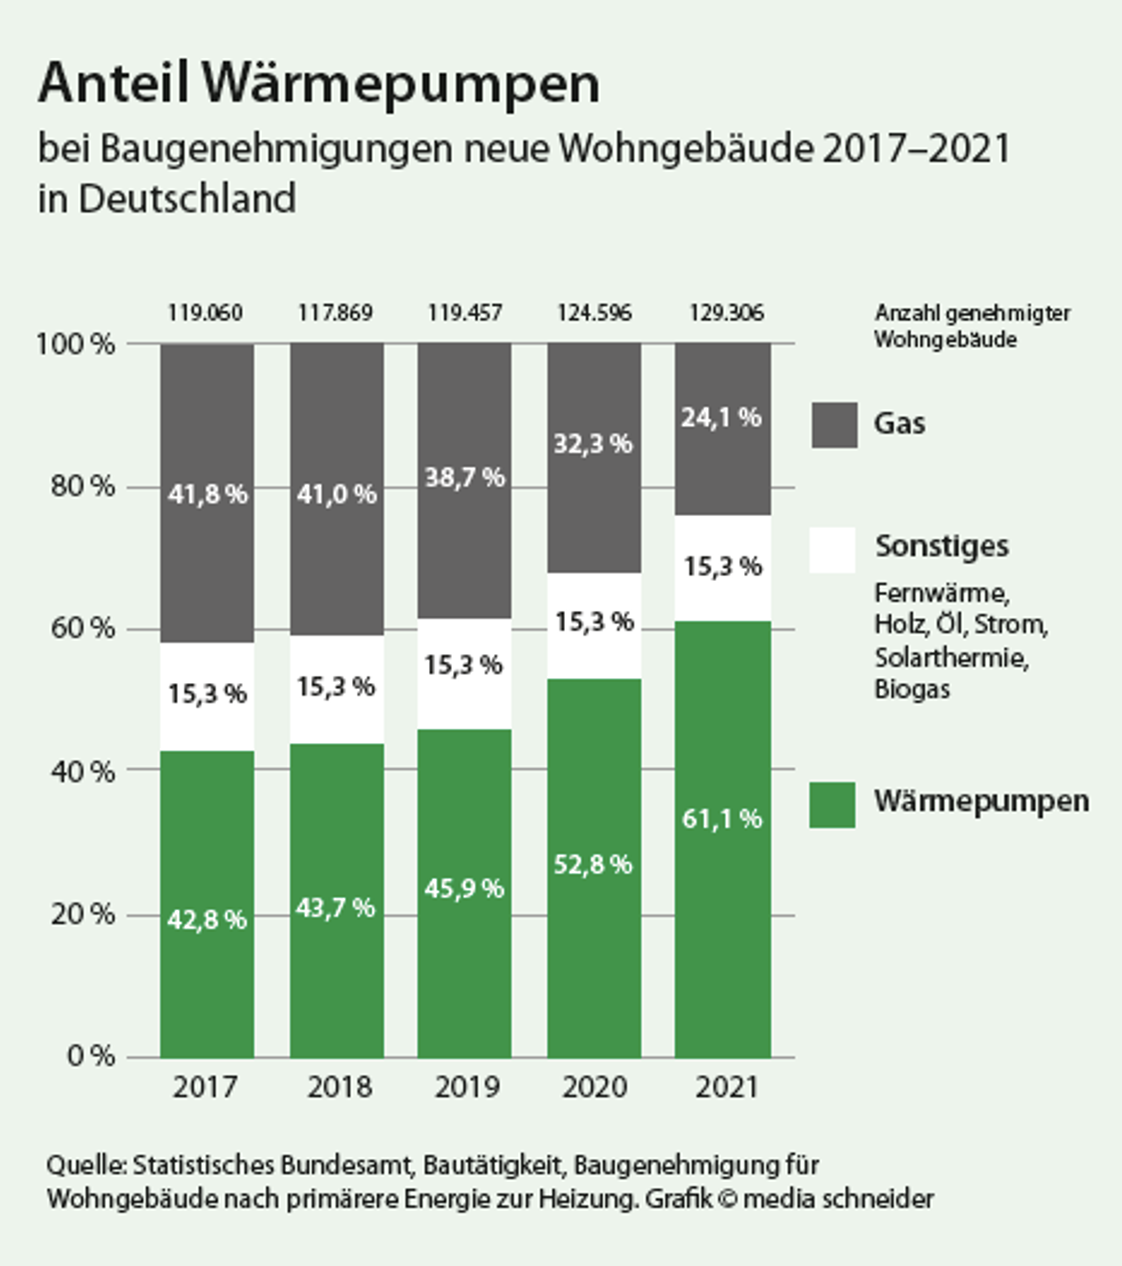 Anteil Wärmepumpen in Deutschland 2017-2021